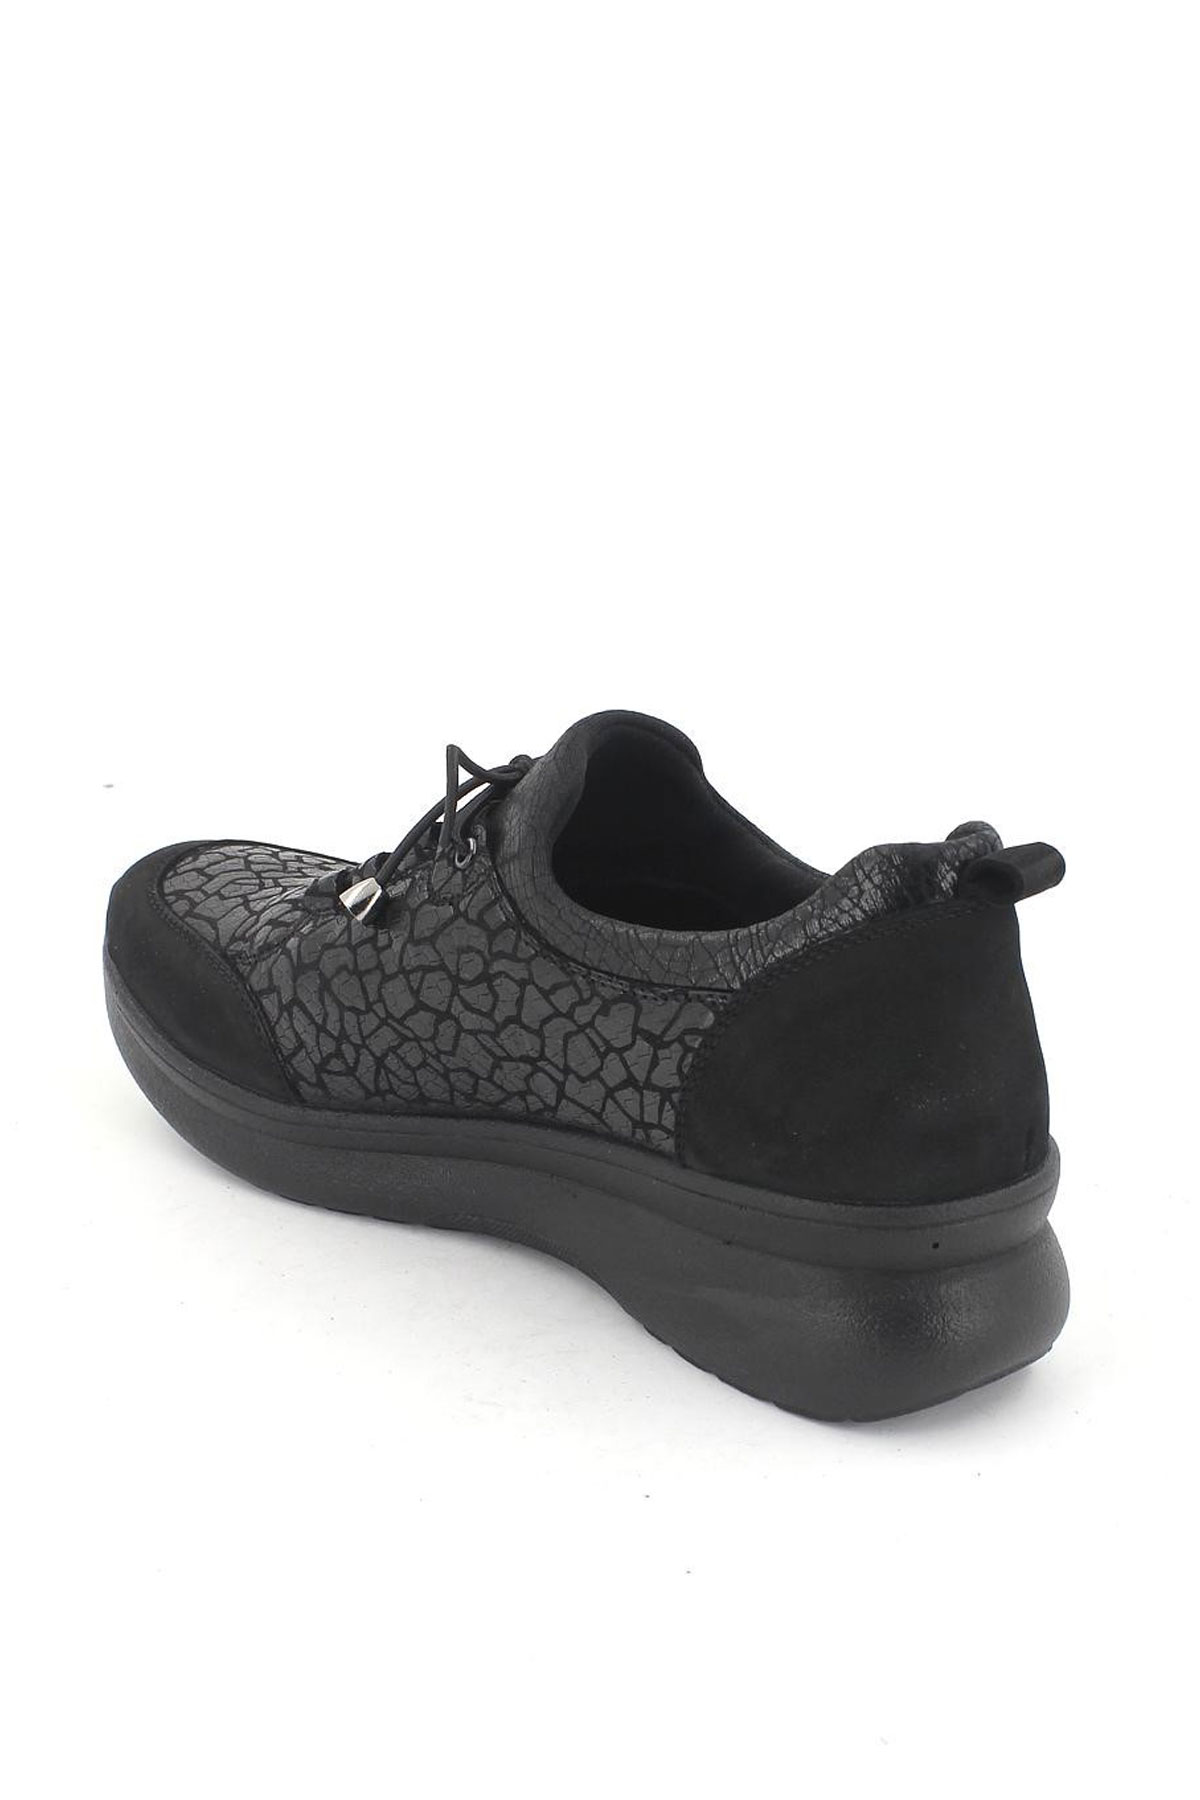 Kadın Comfort Deri Ayakkabı Siyah 1901707K - Thumbnail